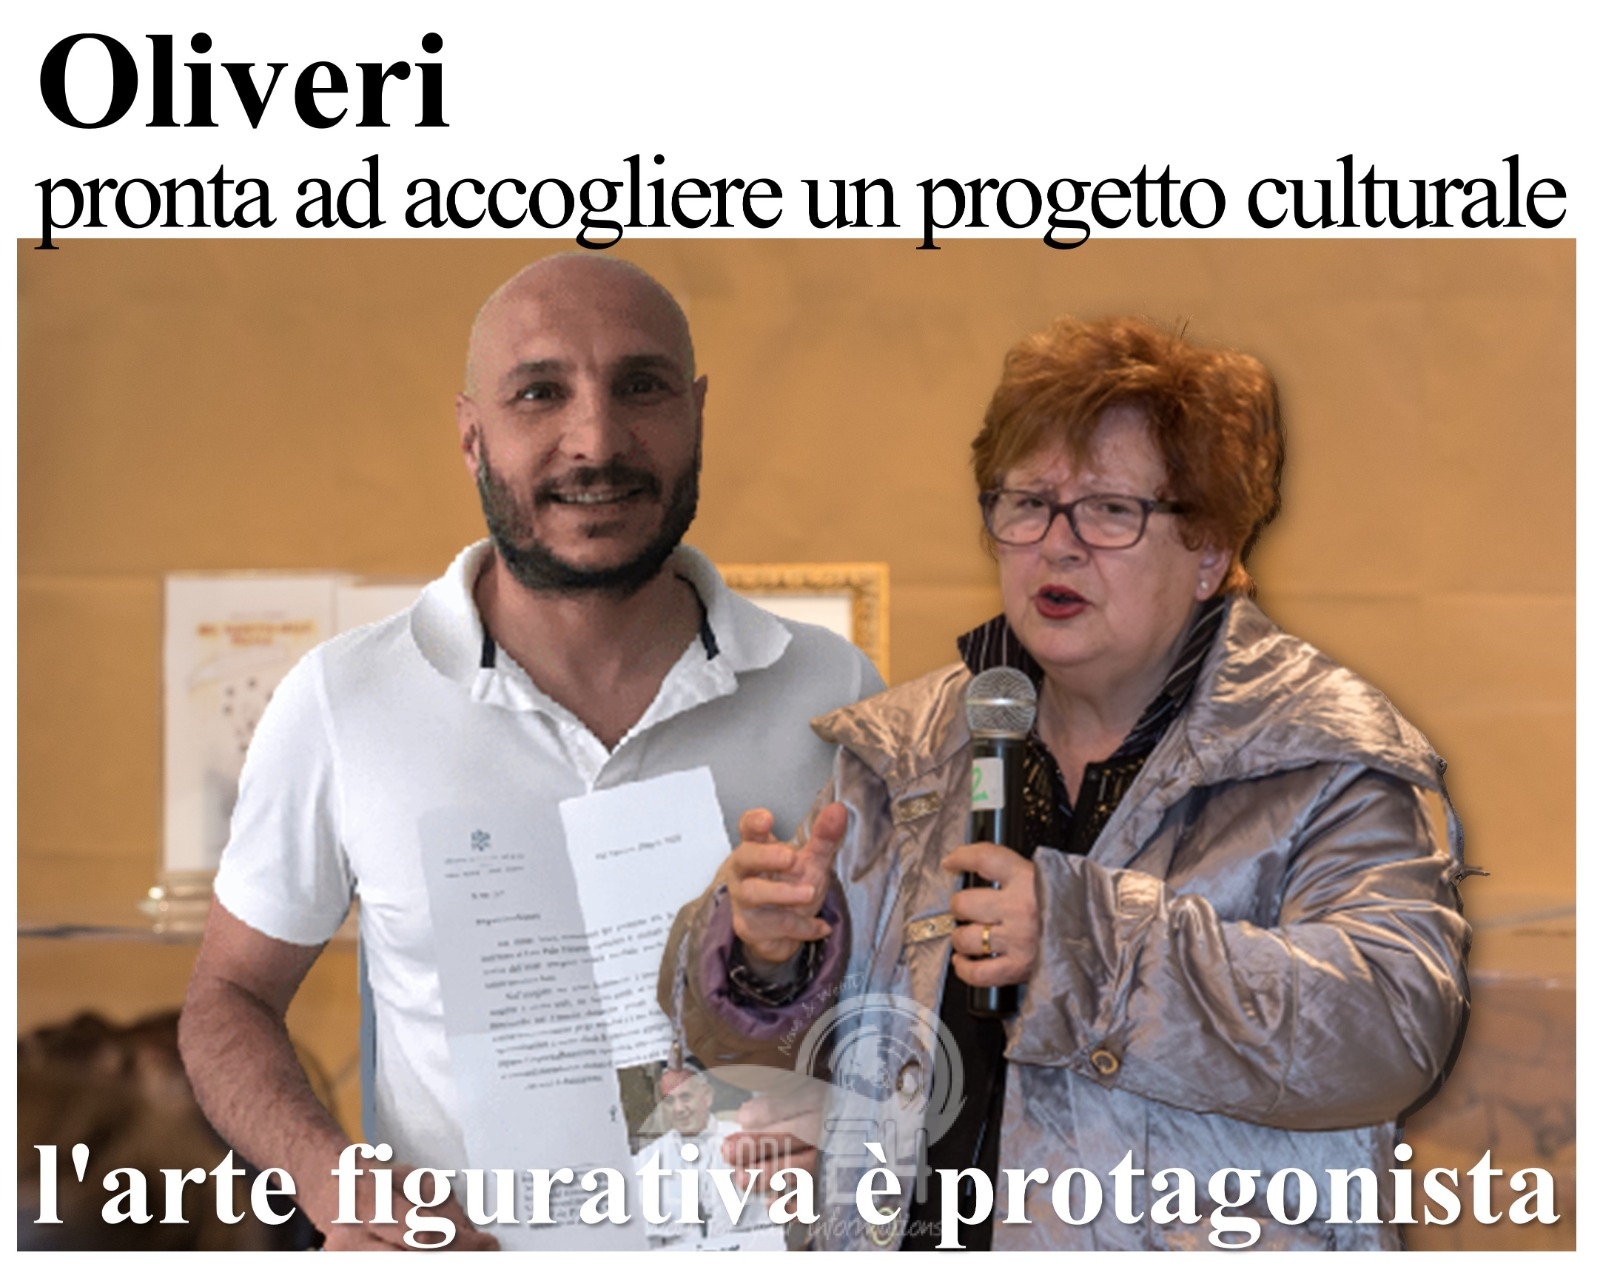 Oliveri – L’amministrazione pronta ad accogliere un progetto culturale in cui l’arte figurativa è protagonista